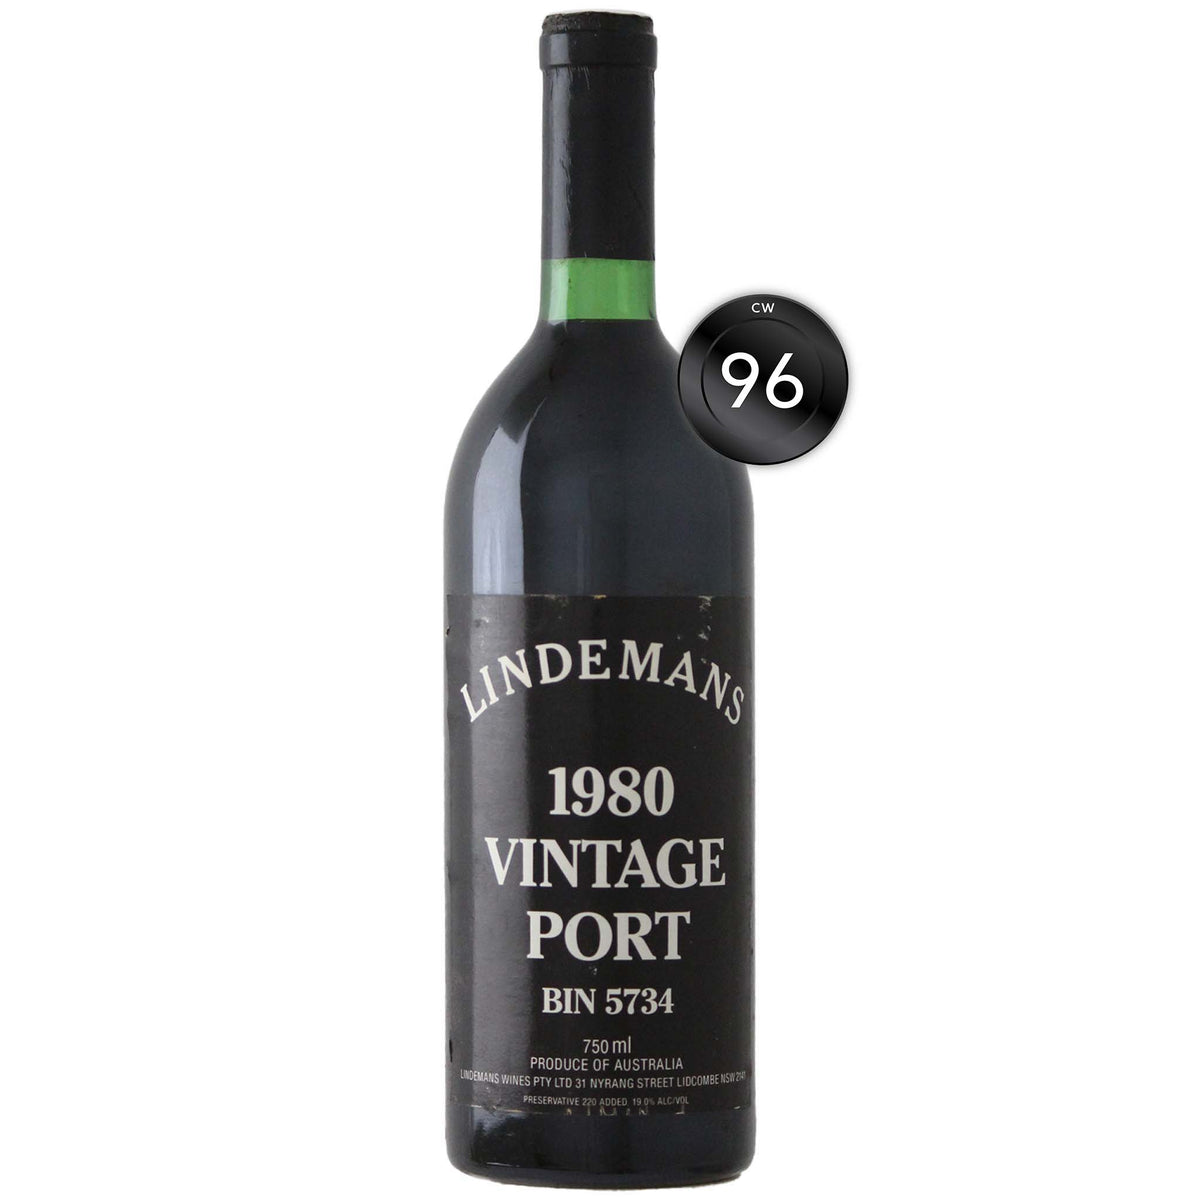 Lindemans Bin 5734 Vintage Port 1980